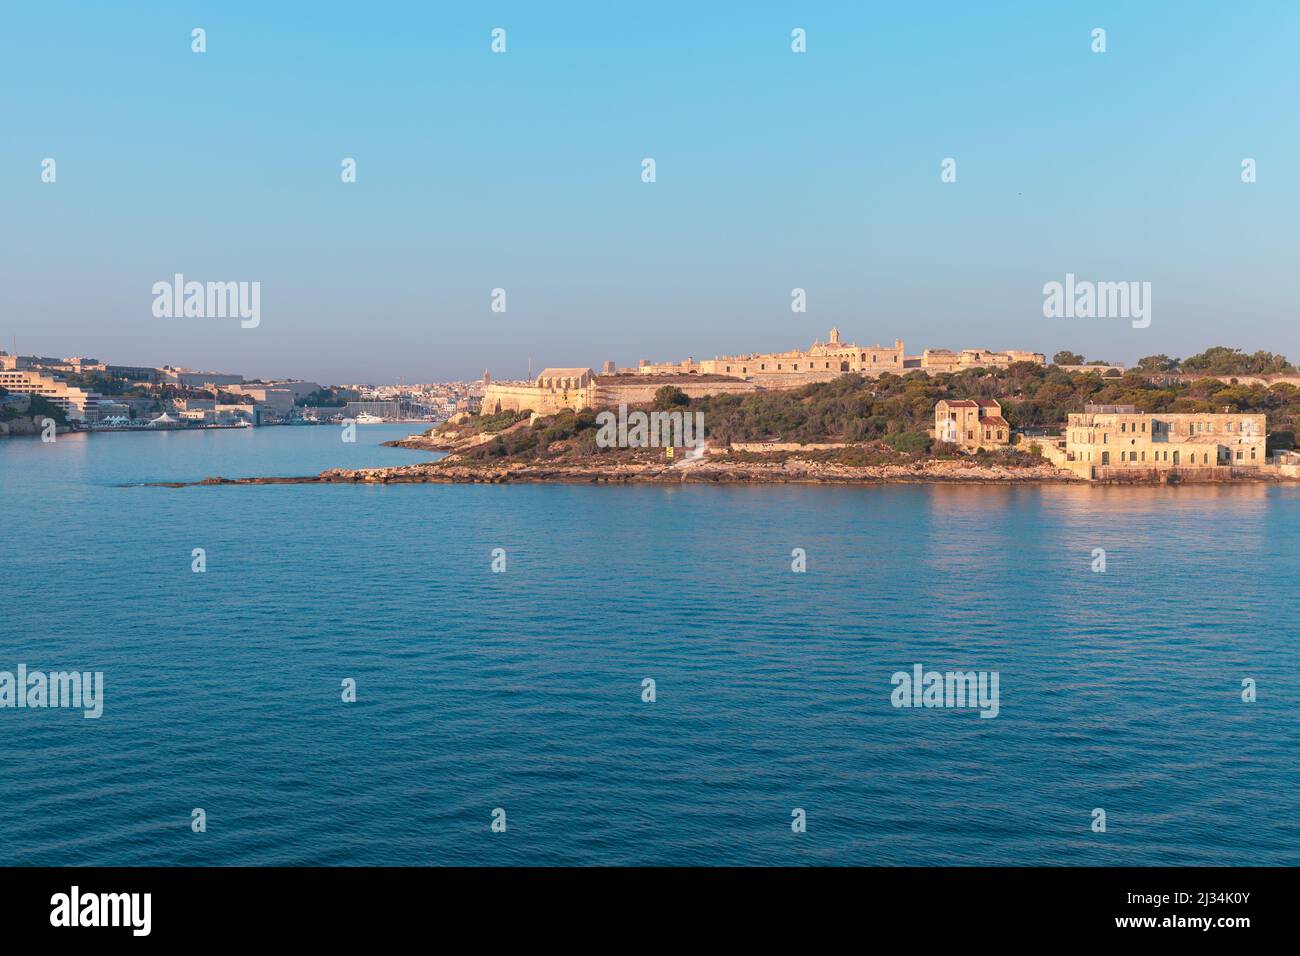 Isola di Manoel, Malta. Paesaggio costiero estivo con antiche fortificazioni e case. Fu costruita nel 18th secolo per ordine di San Giovanni Foto Stock